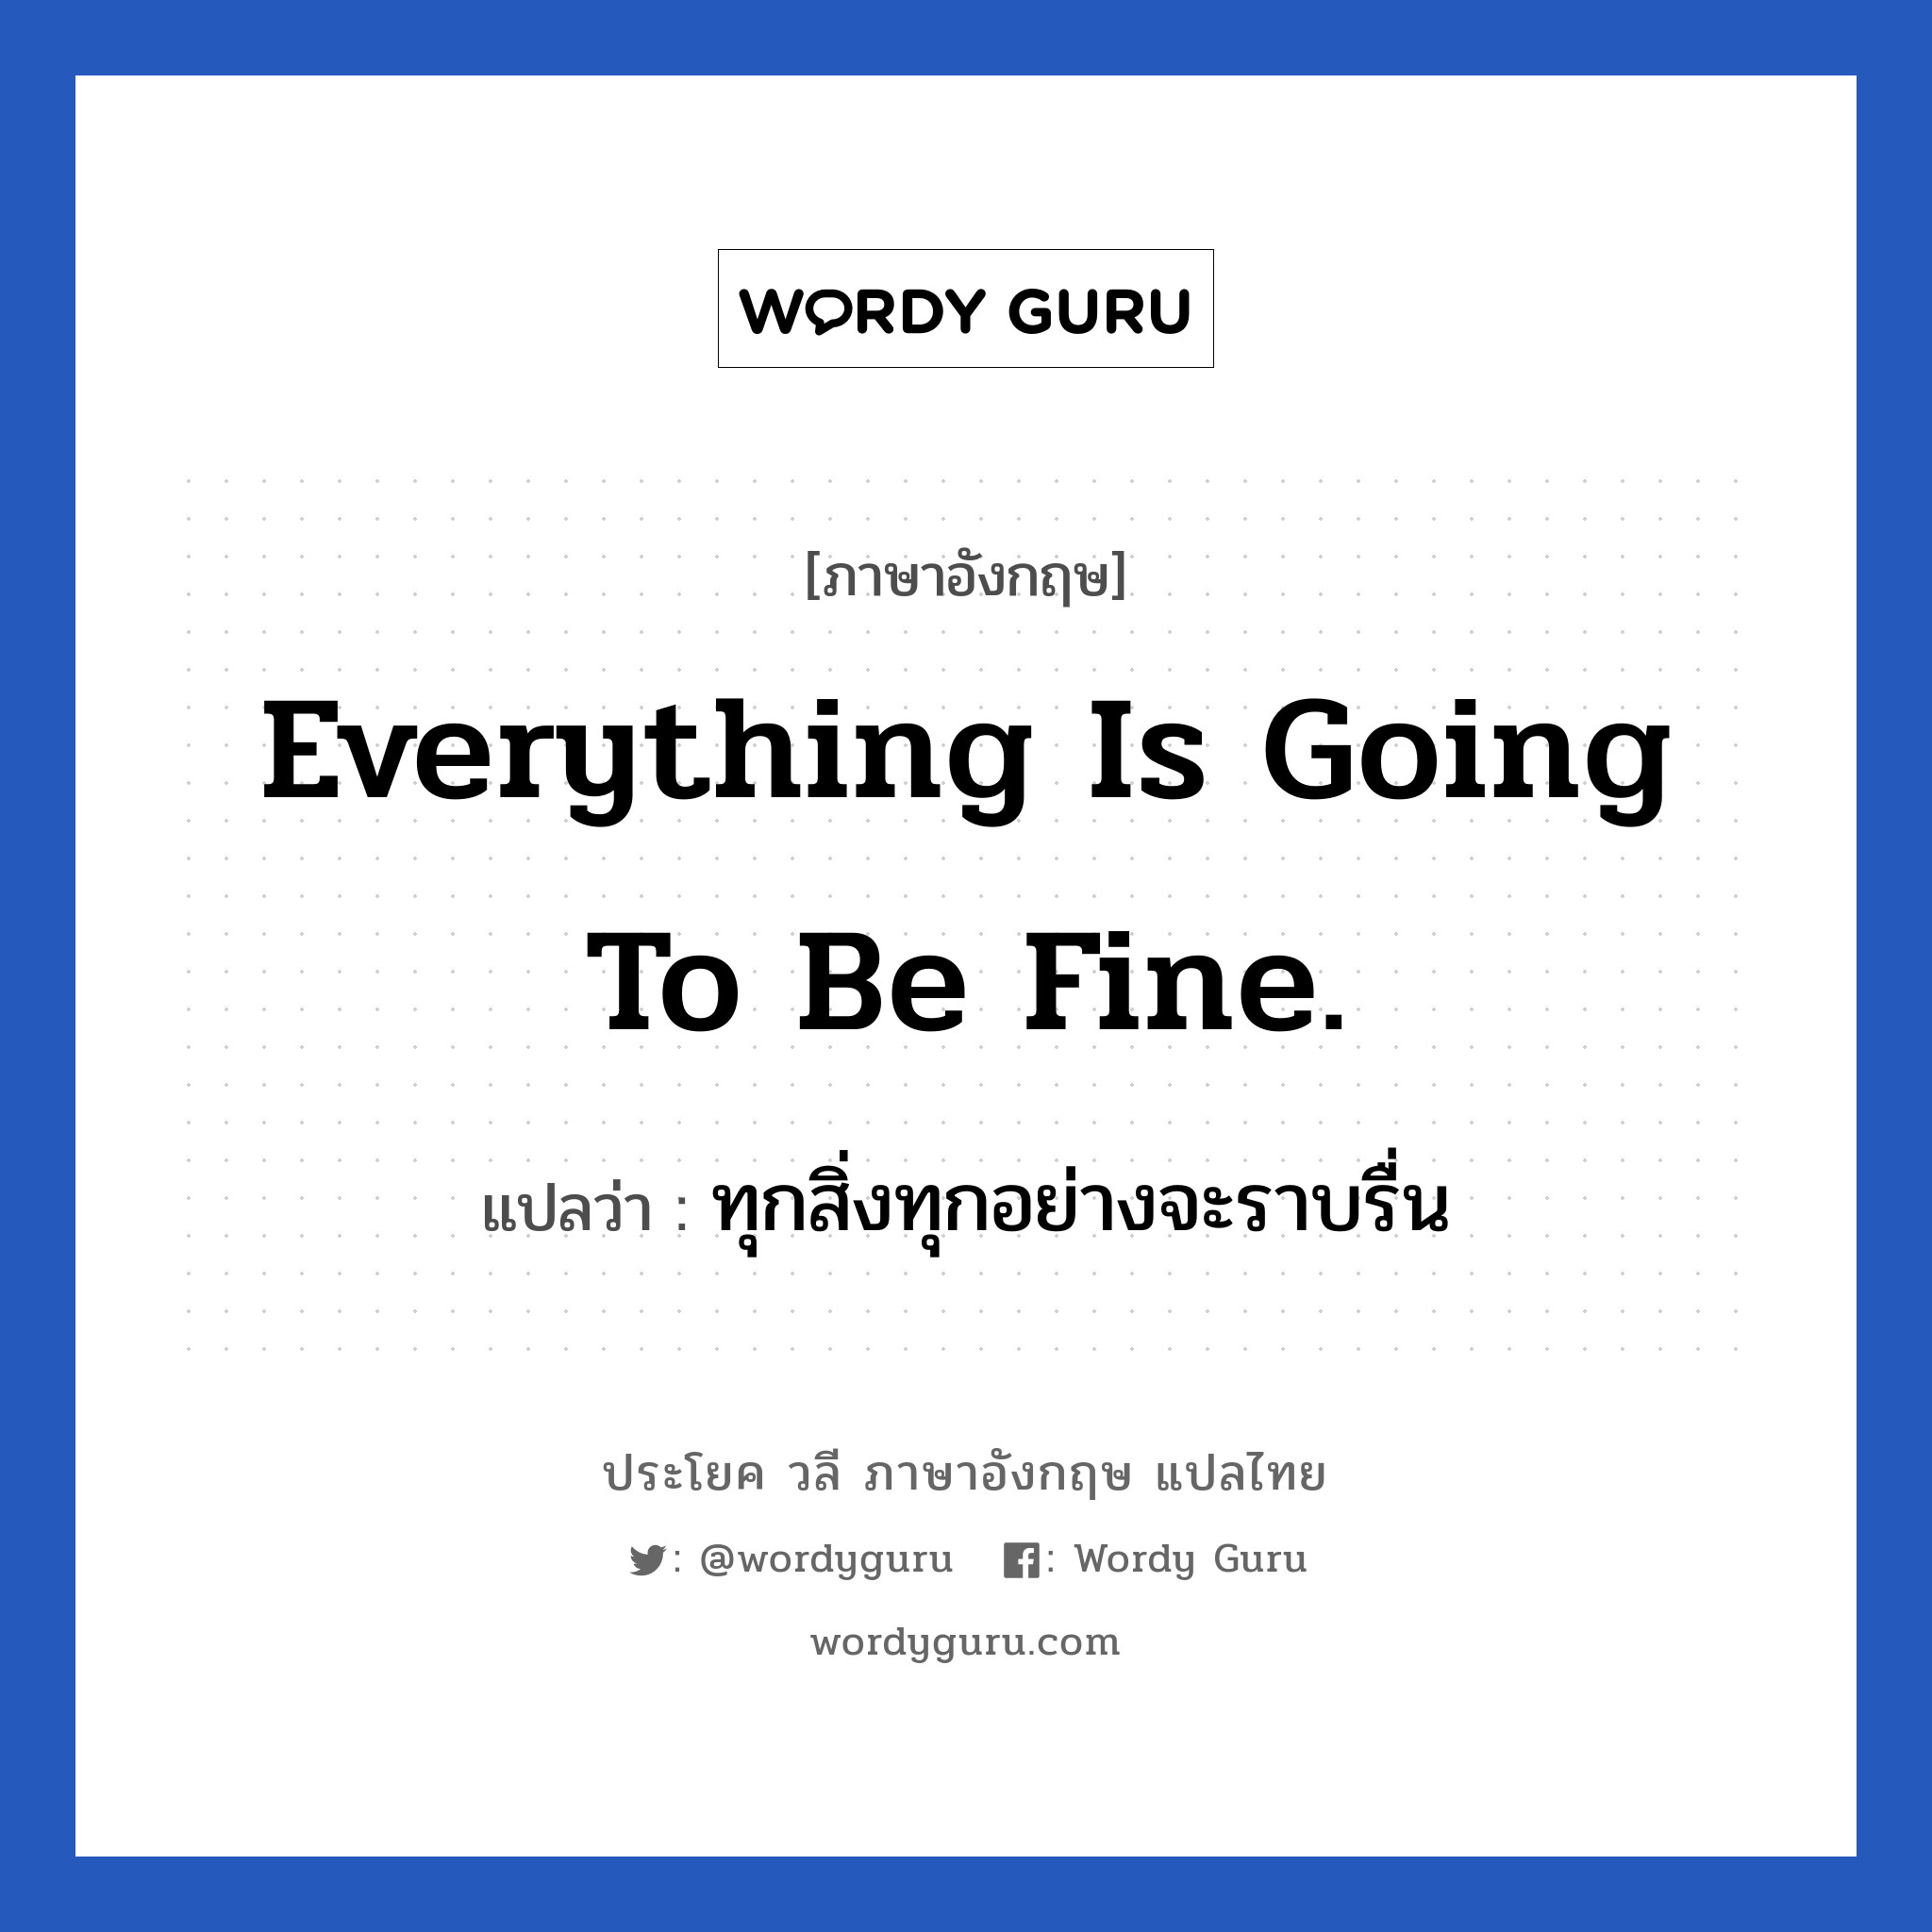 ทุกสิ่งทุกอย่างจะราบรื่น ภาษาอังกฤษ?, วลีภาษาอังกฤษ ทุกสิ่งทุกอย่างจะราบรื่น แปลว่า Everything is going to be fine.